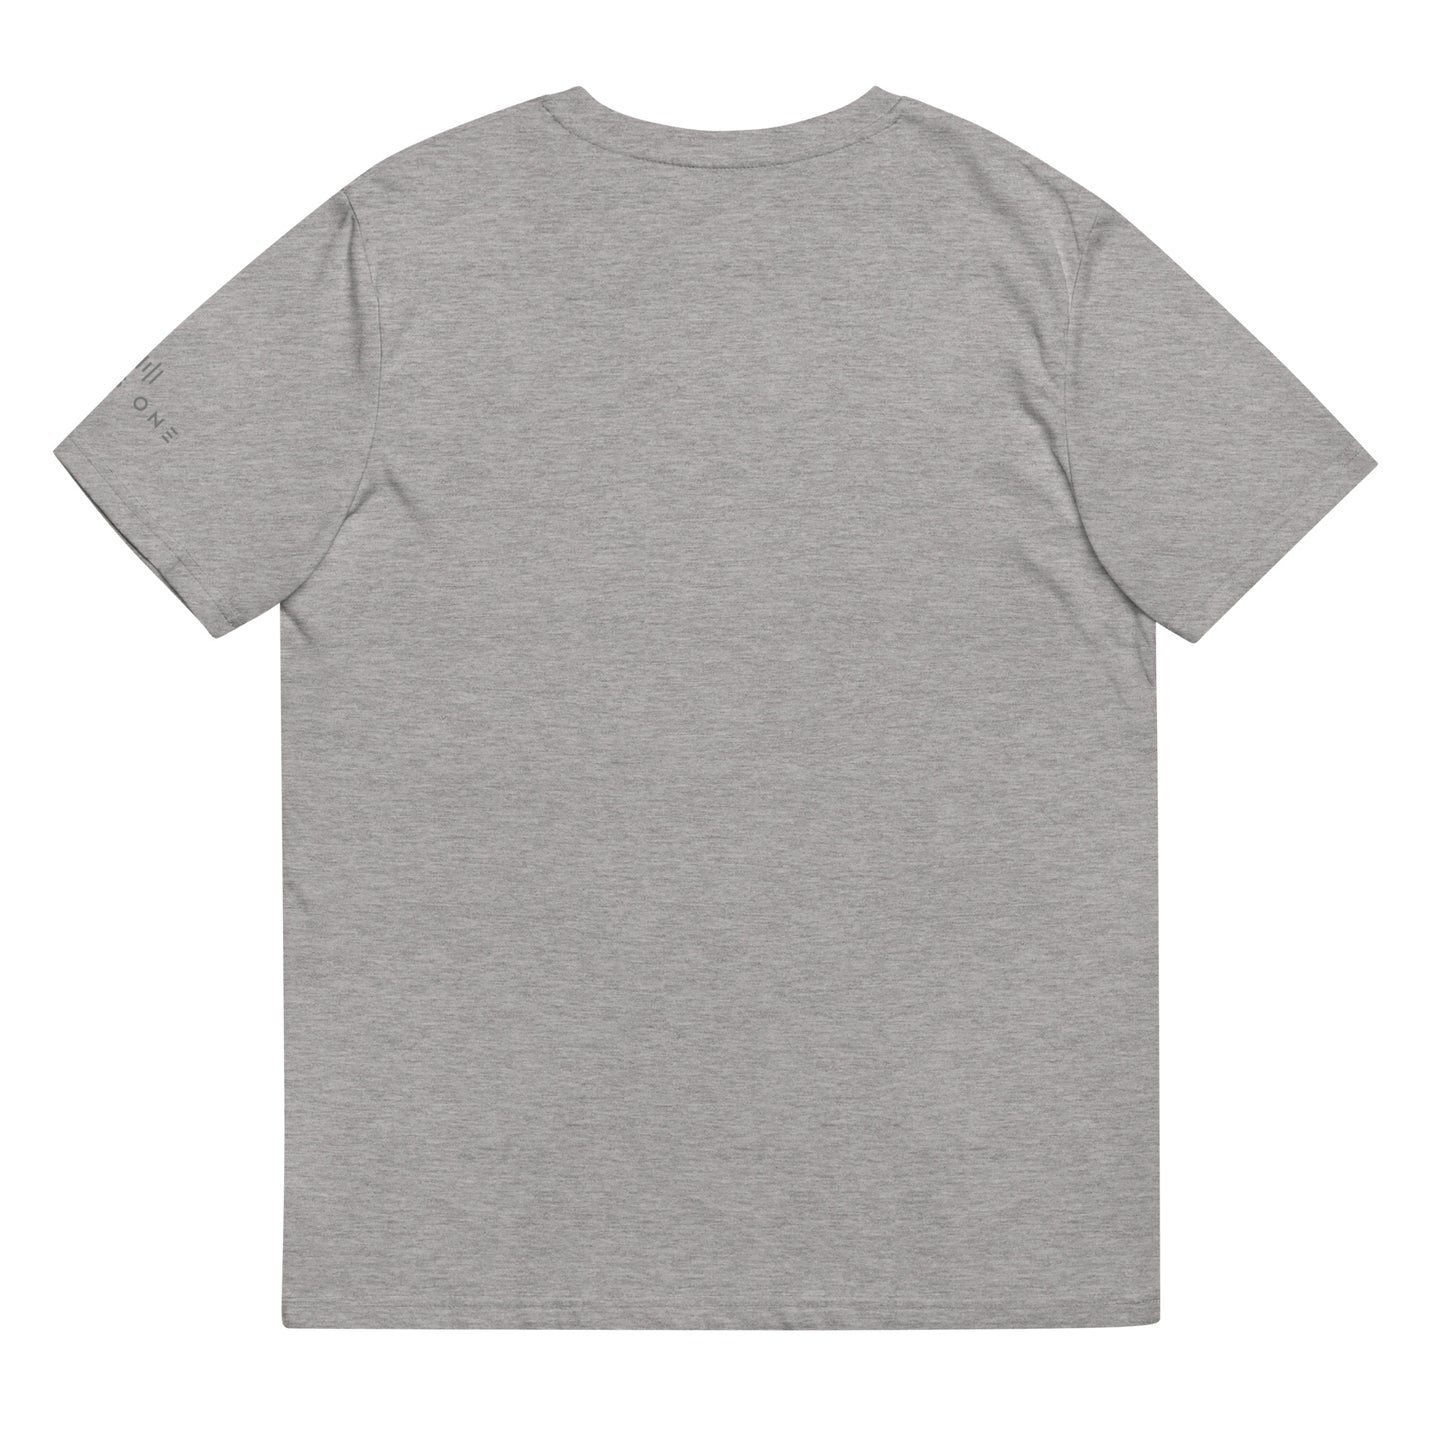 Tribe Mic-e (v2) Unisex organic cotton t-shirt